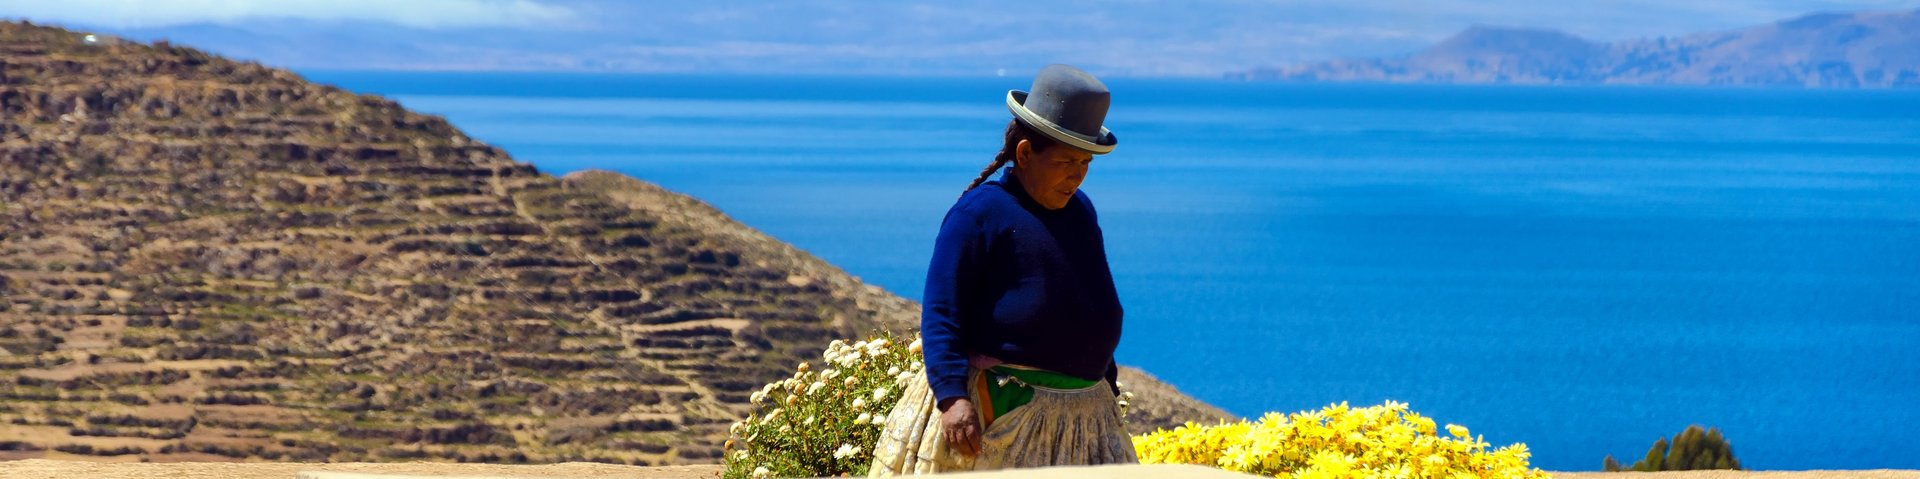 Einheinmische auf der Isla del Sol in Bolivien